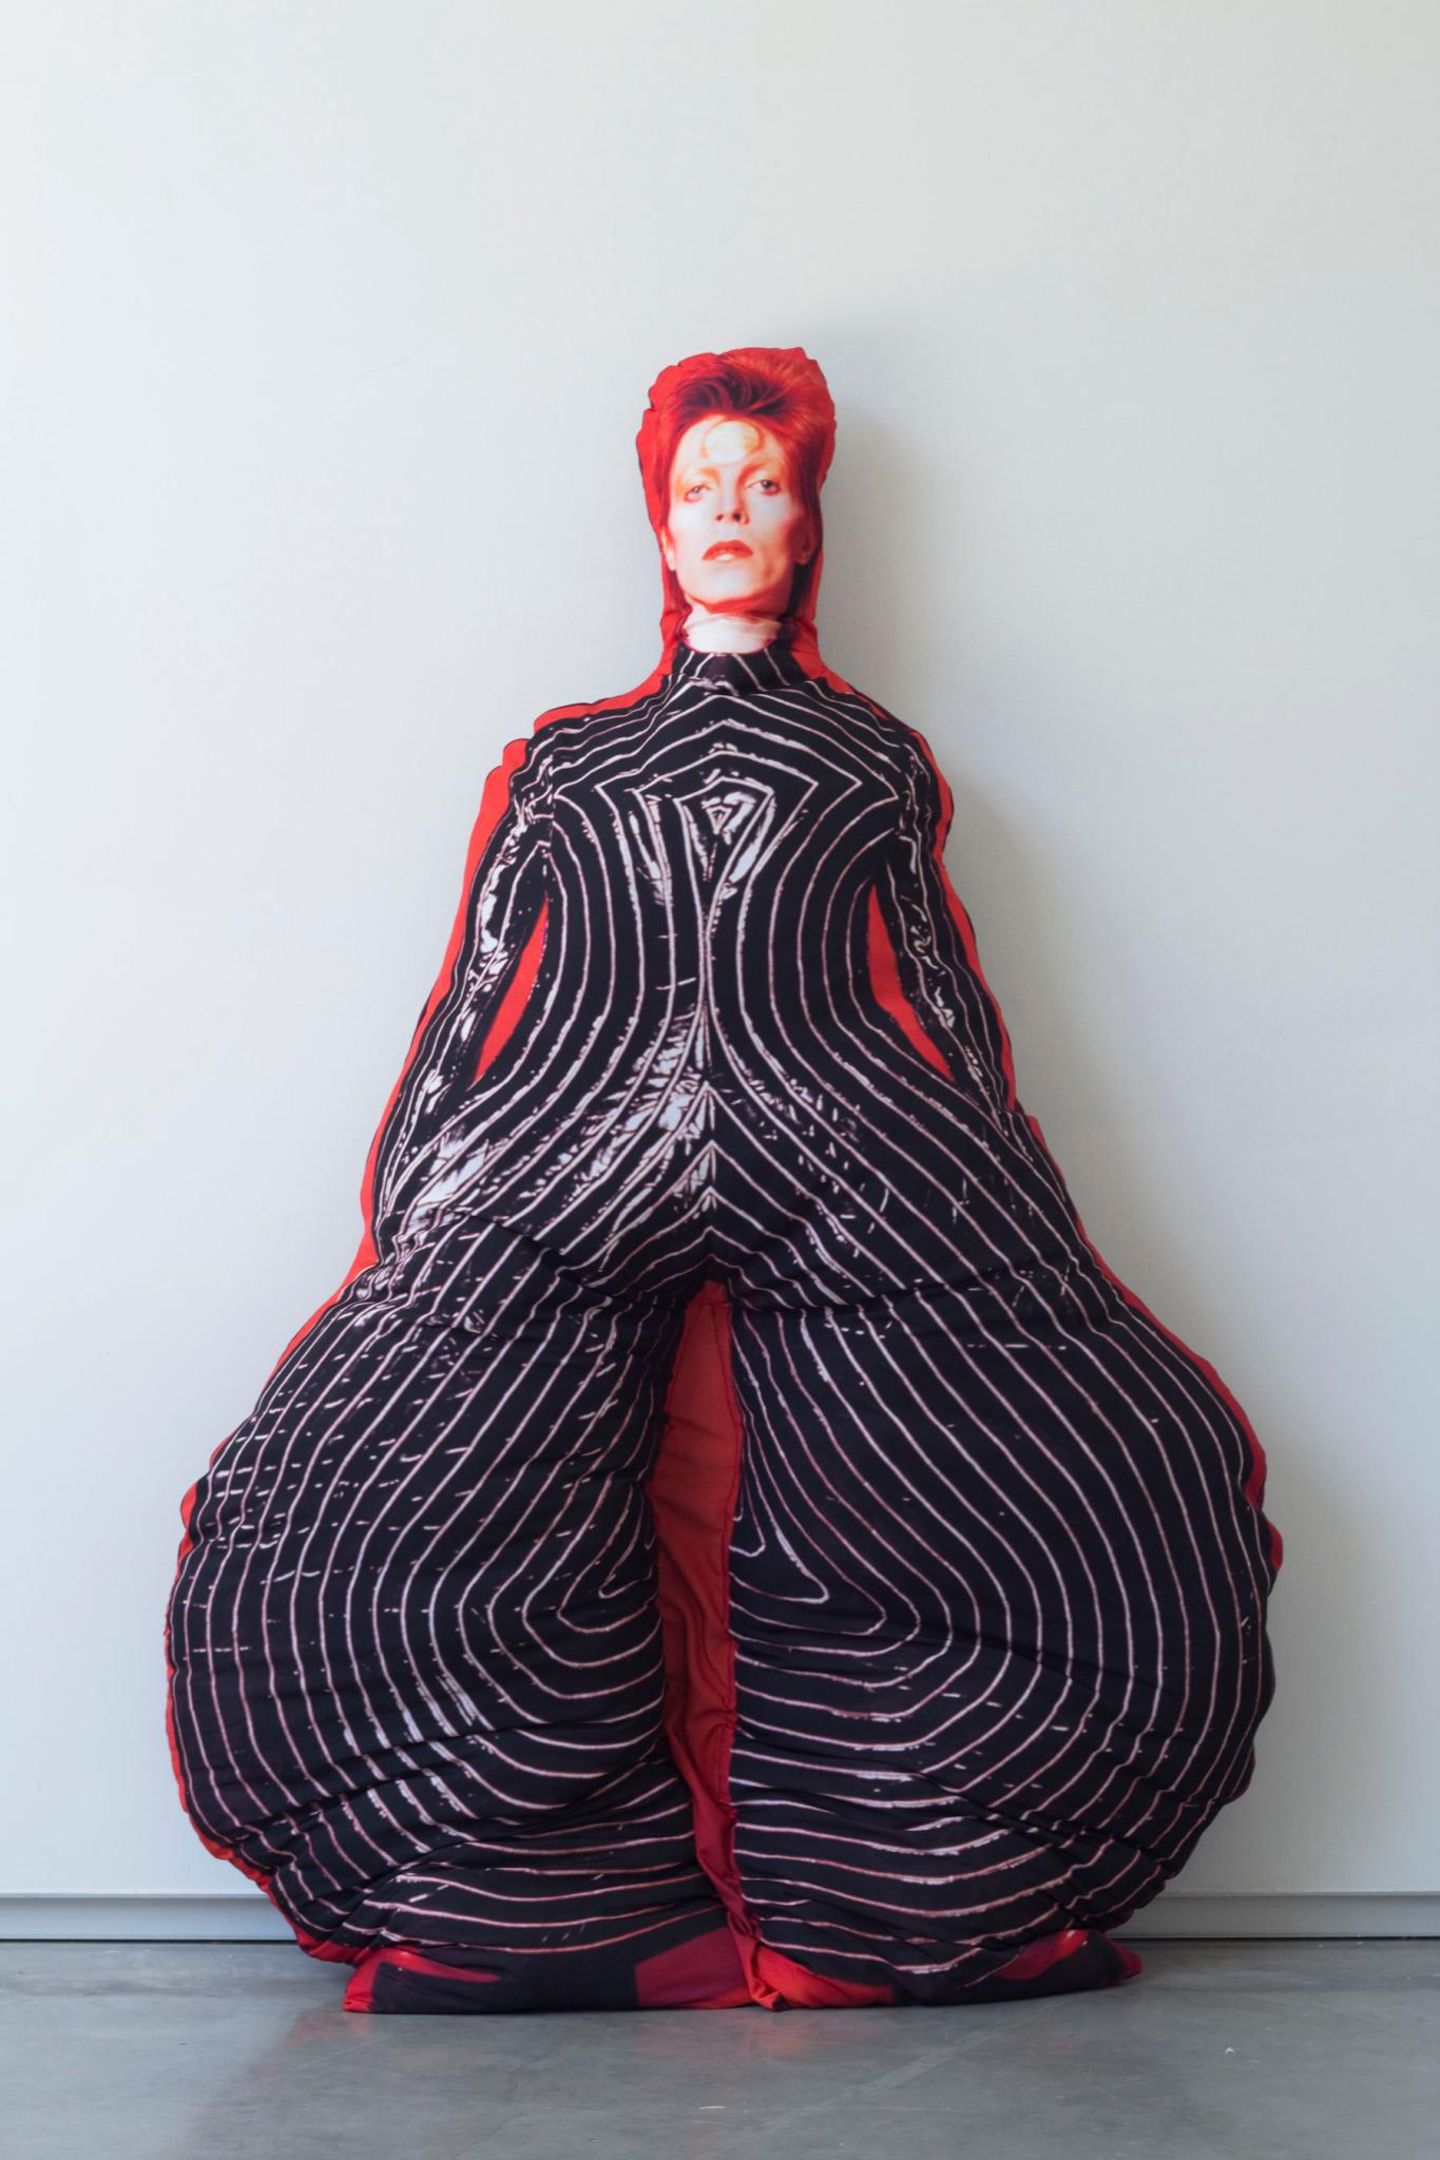 Sänger David Bowie ist jetzt als lebensgroßes Kissen zu haben.